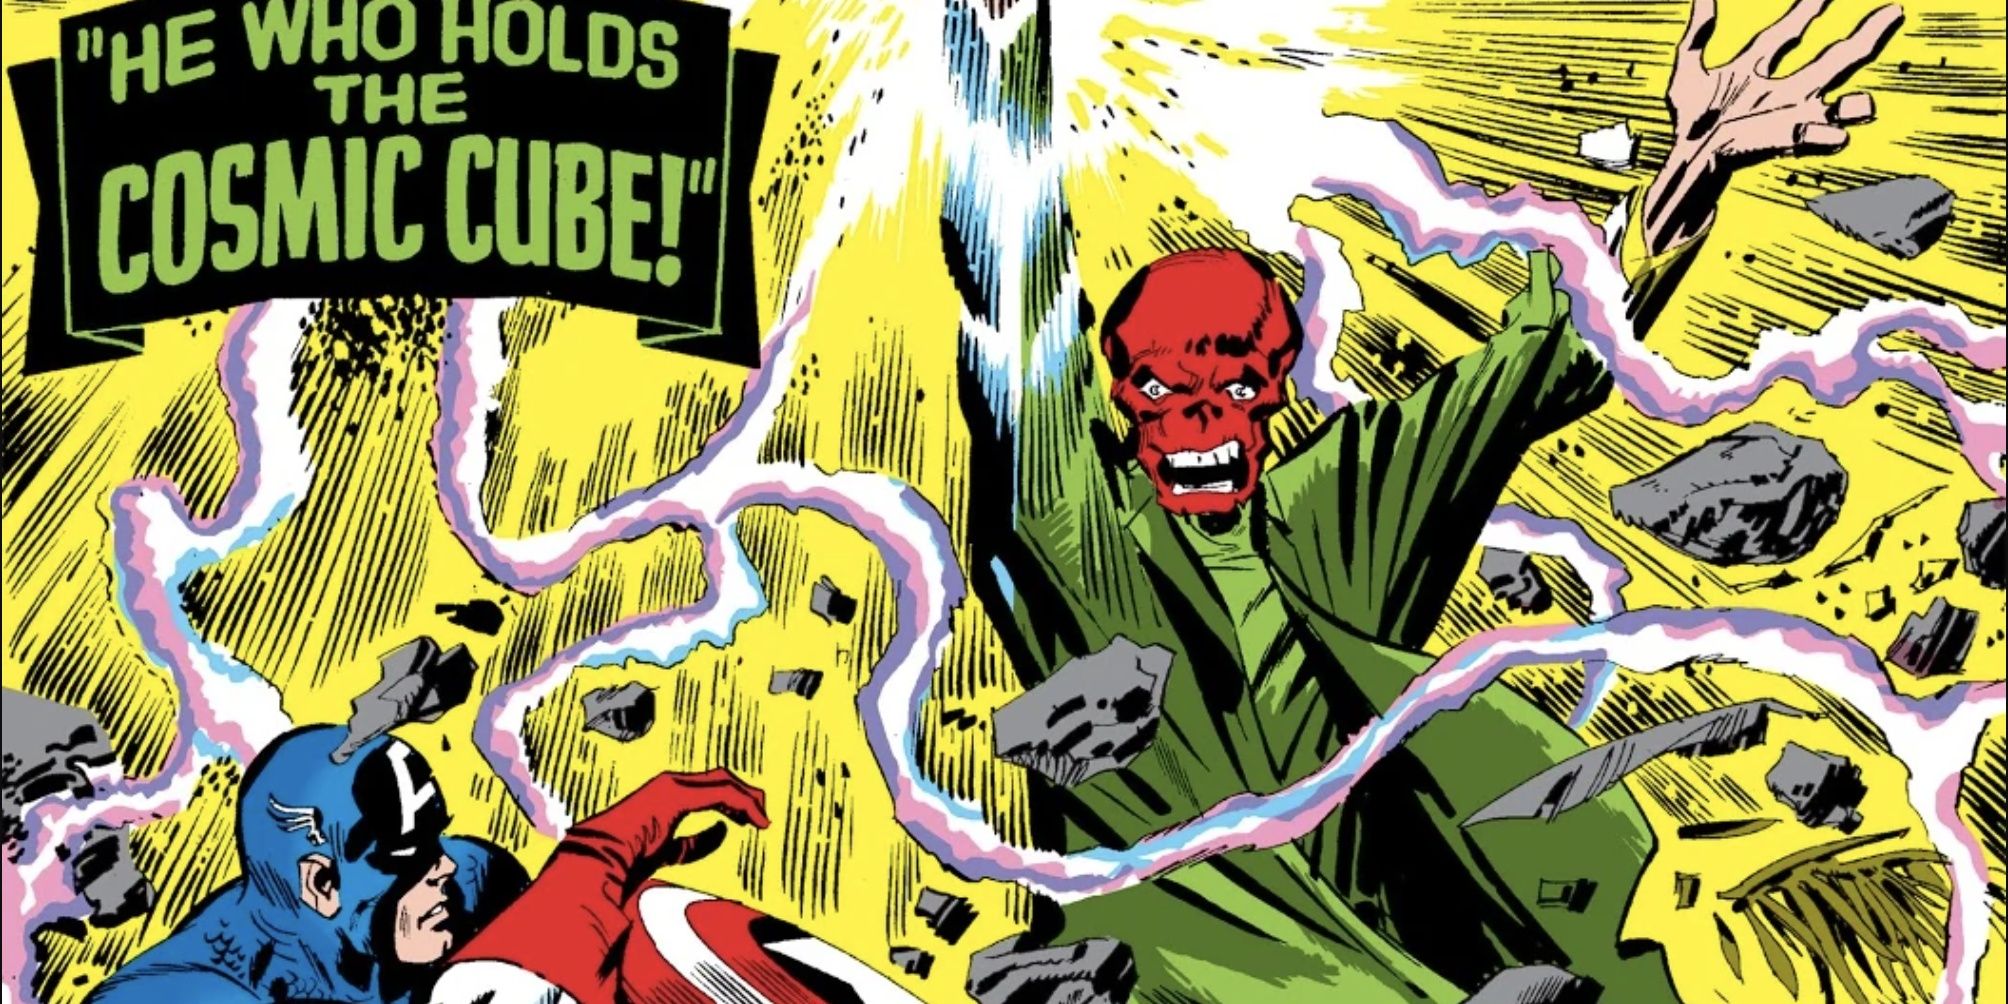 Red Skull holds the Cosmic Cube against Captain America.